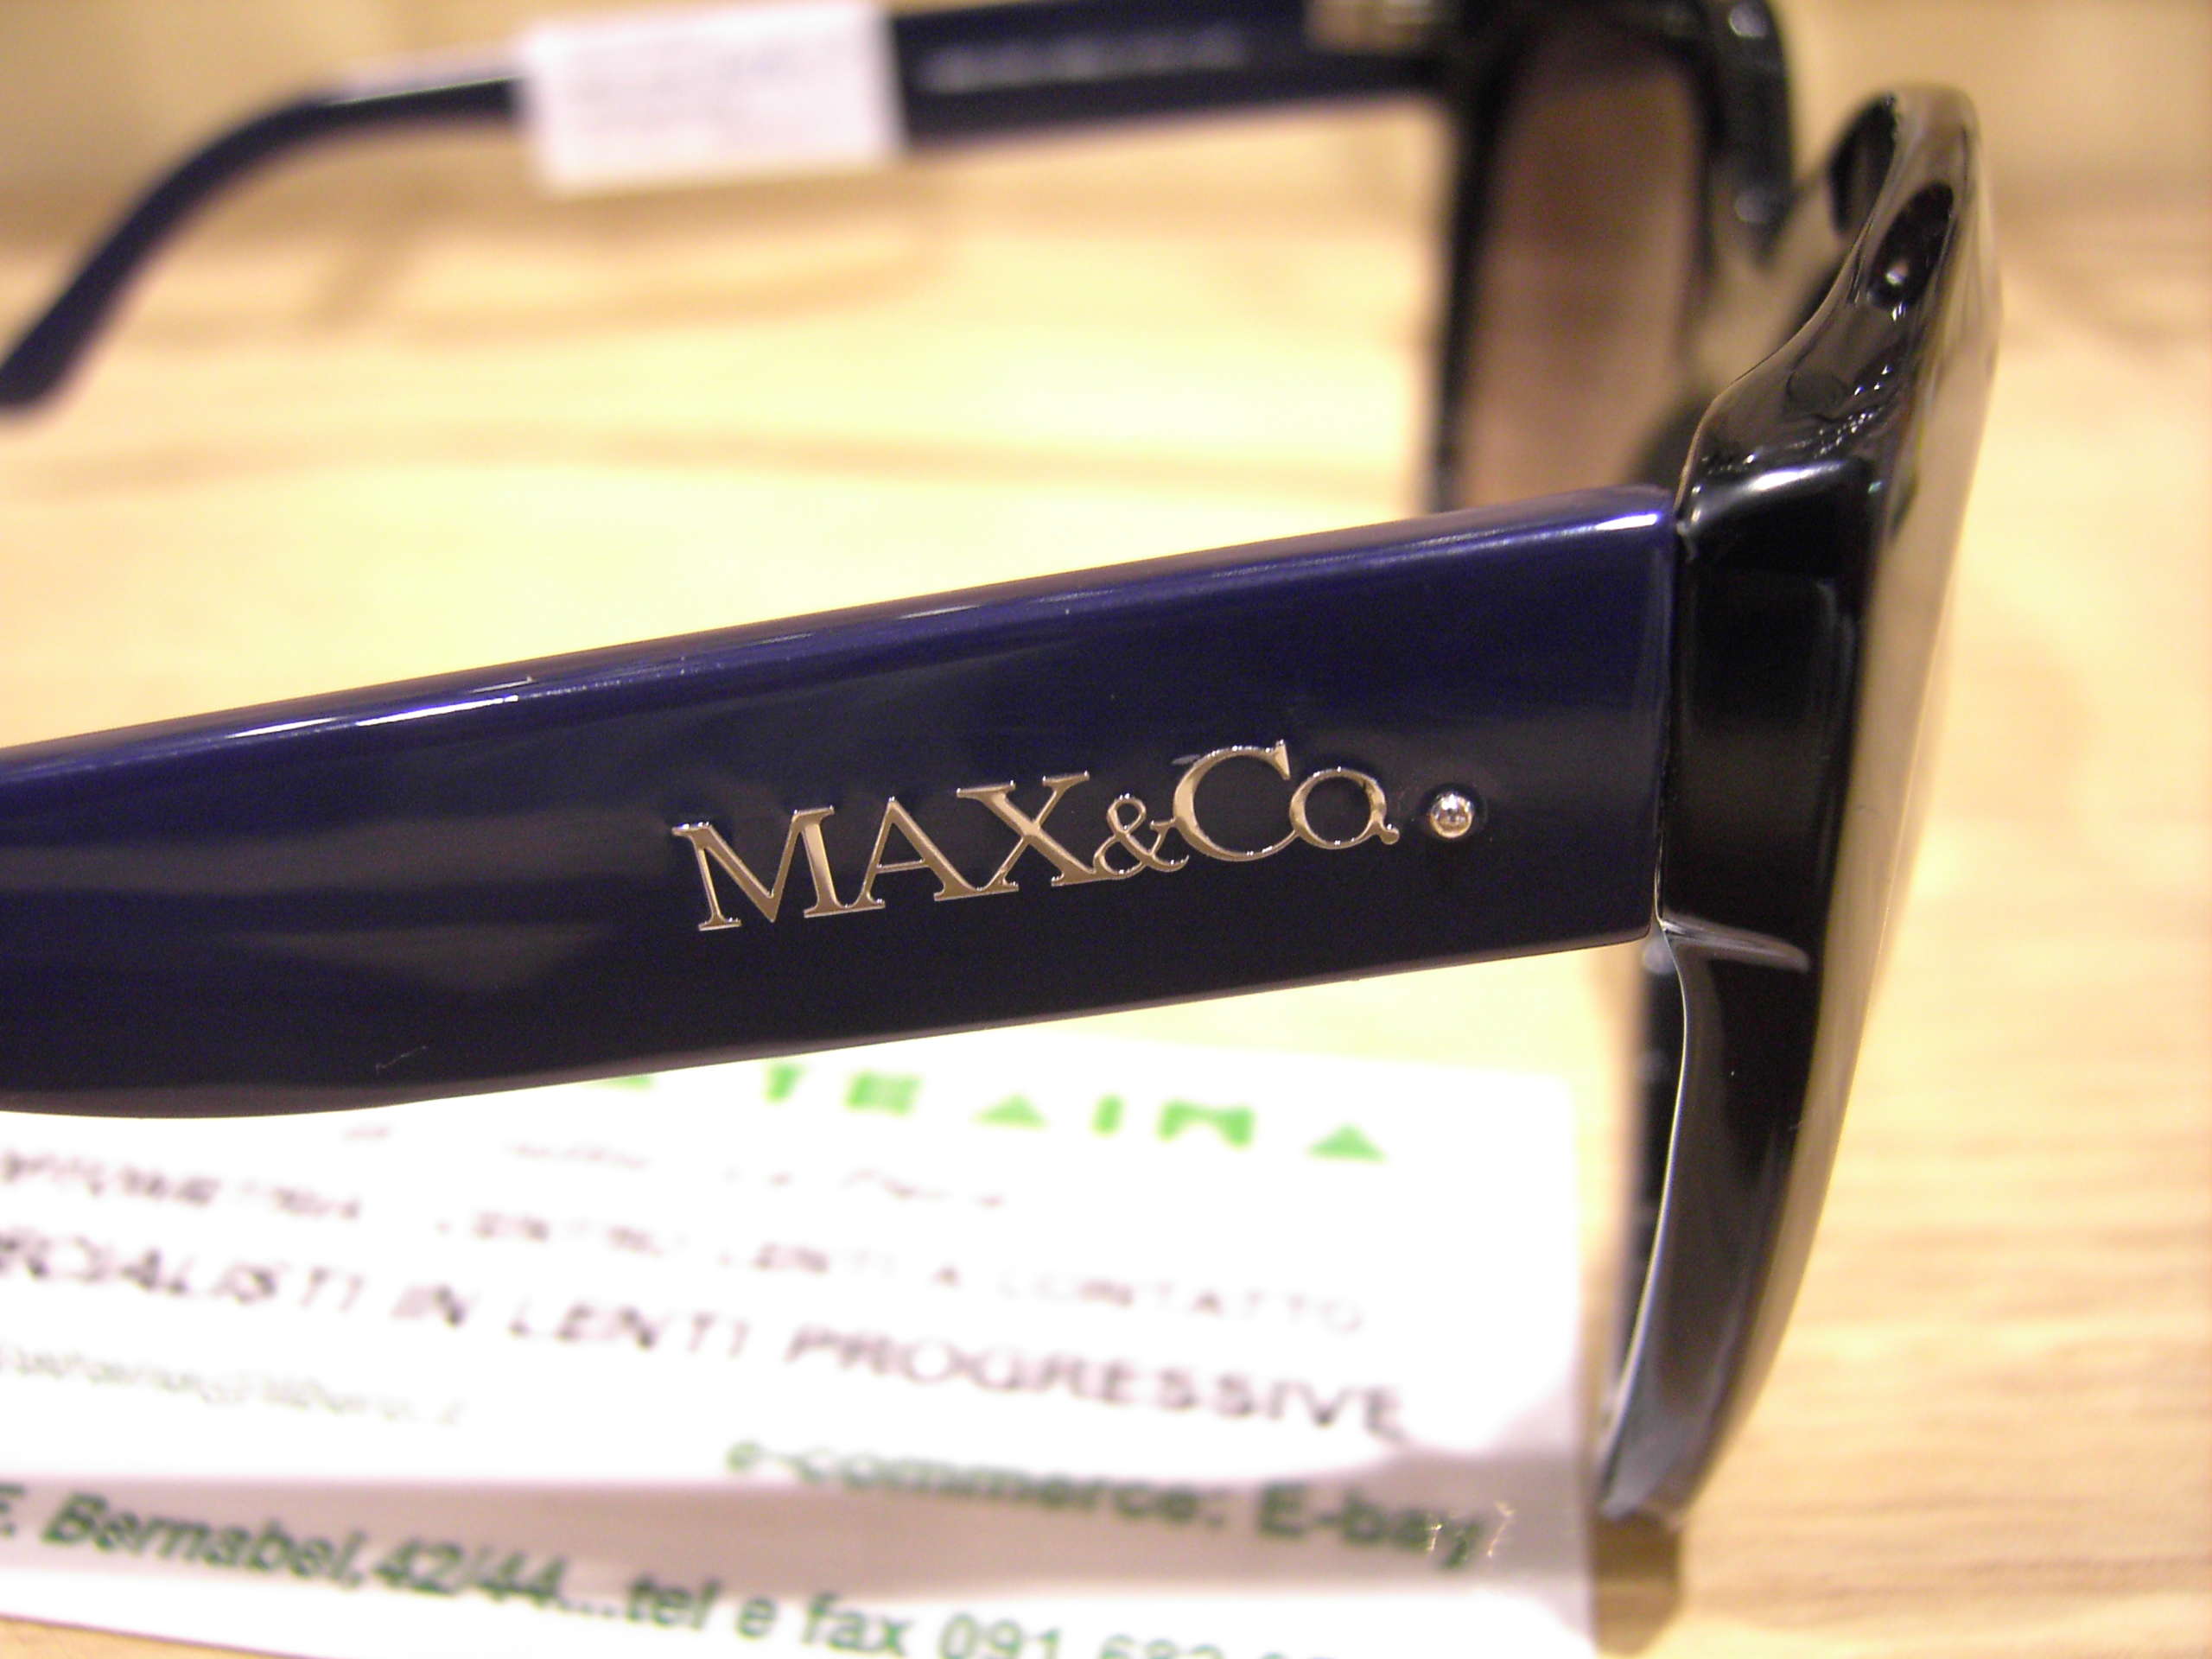 MAX&Co